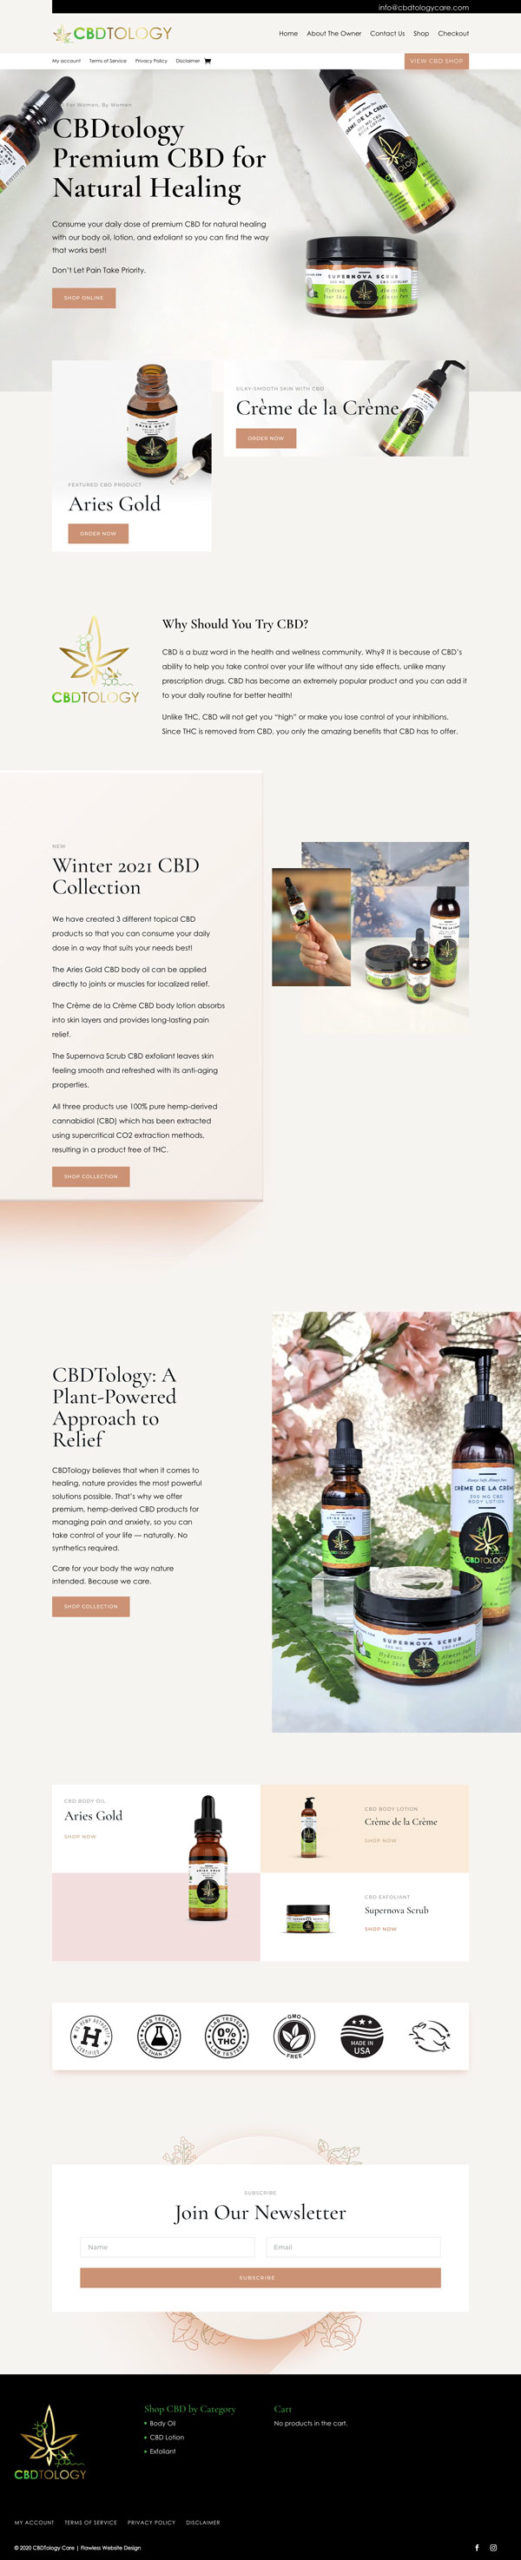 CBDtology Care Website Design